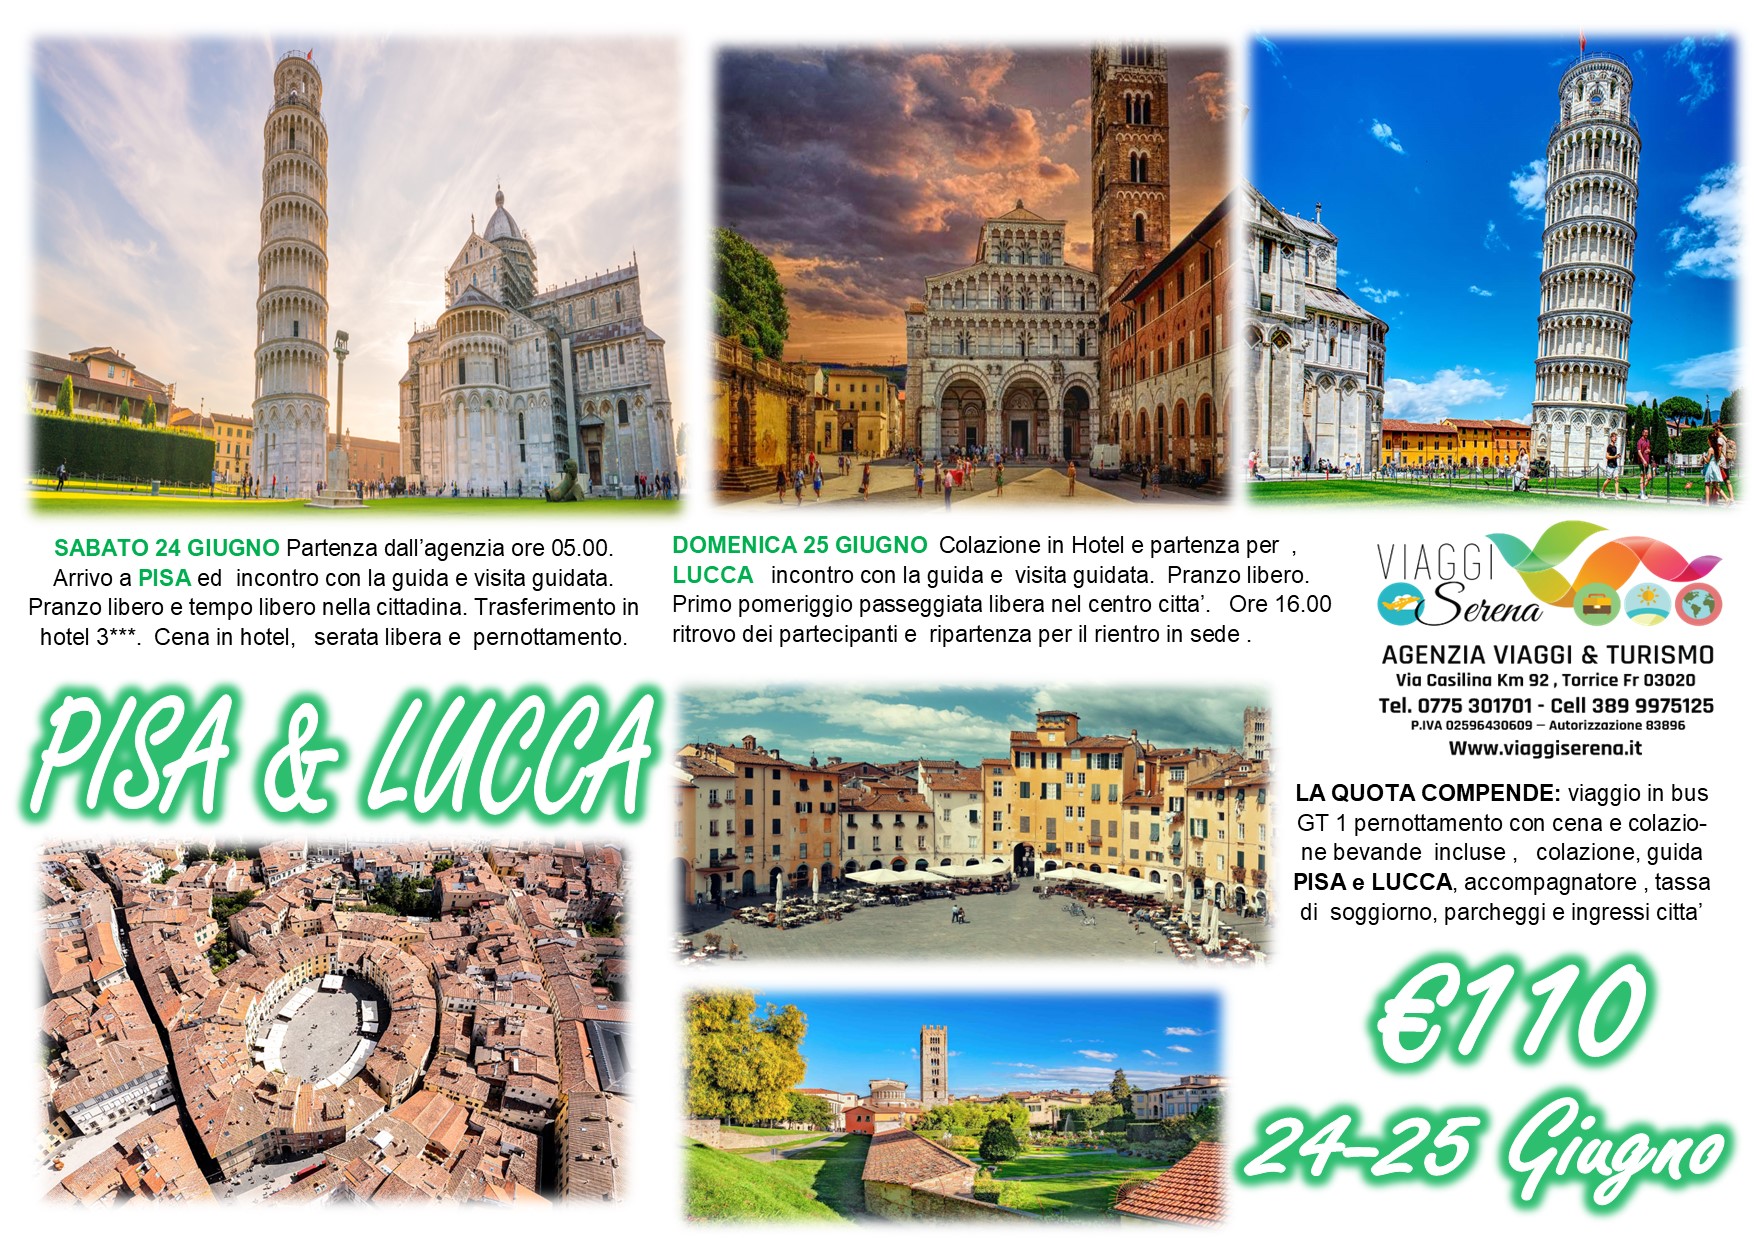 Viaggi di Gruppo: Pisa & Lucca 24-25 Giugno € 110,00